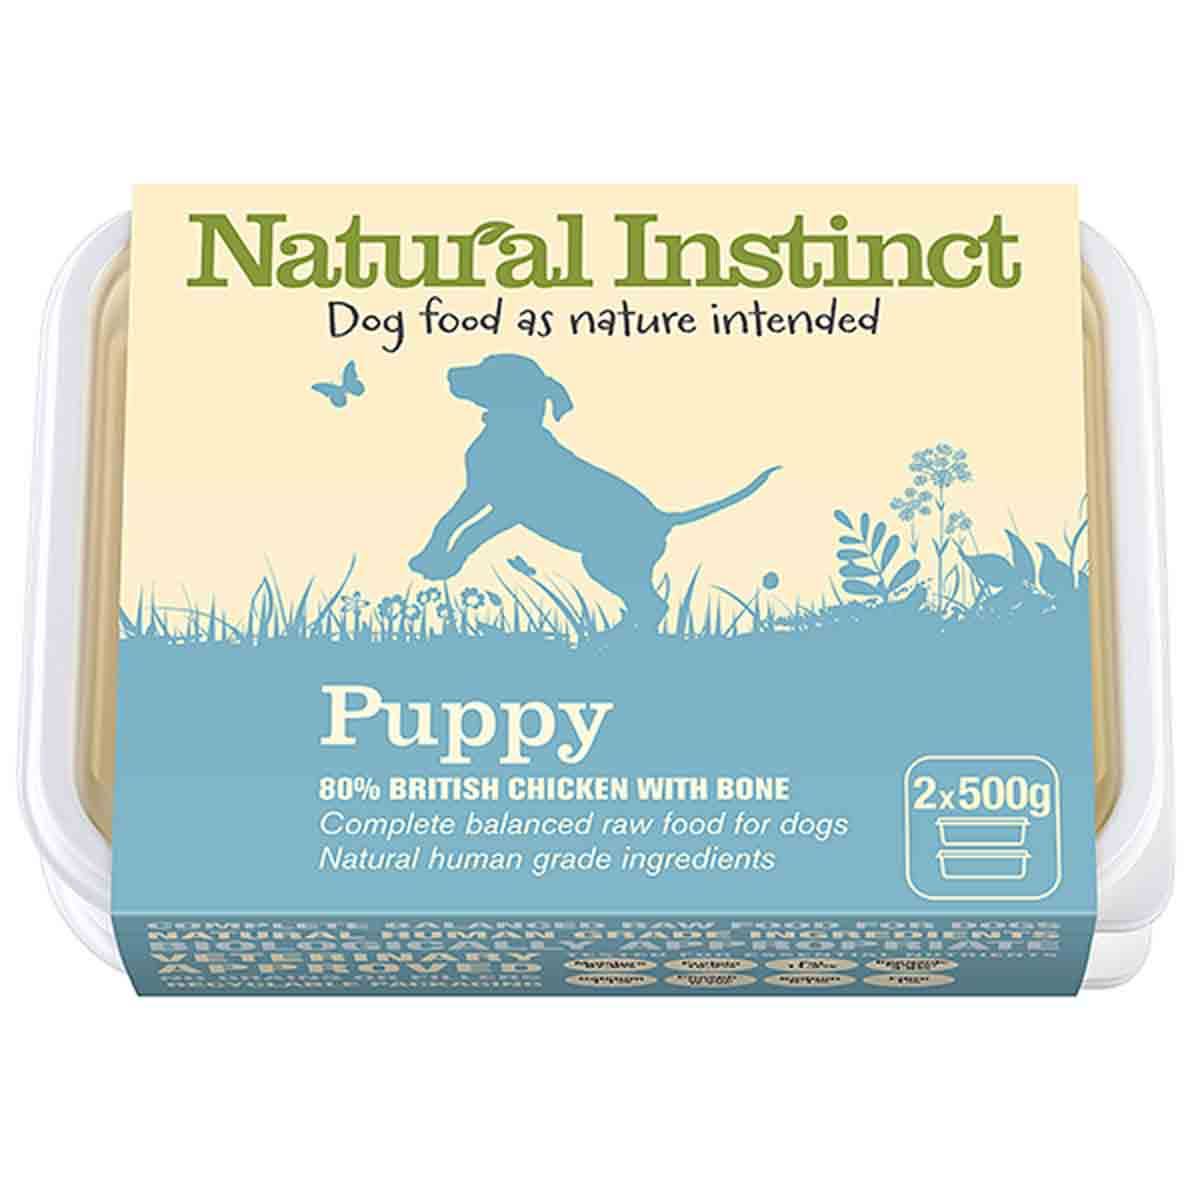 Natural Instinct Puppy Food, 2x500g